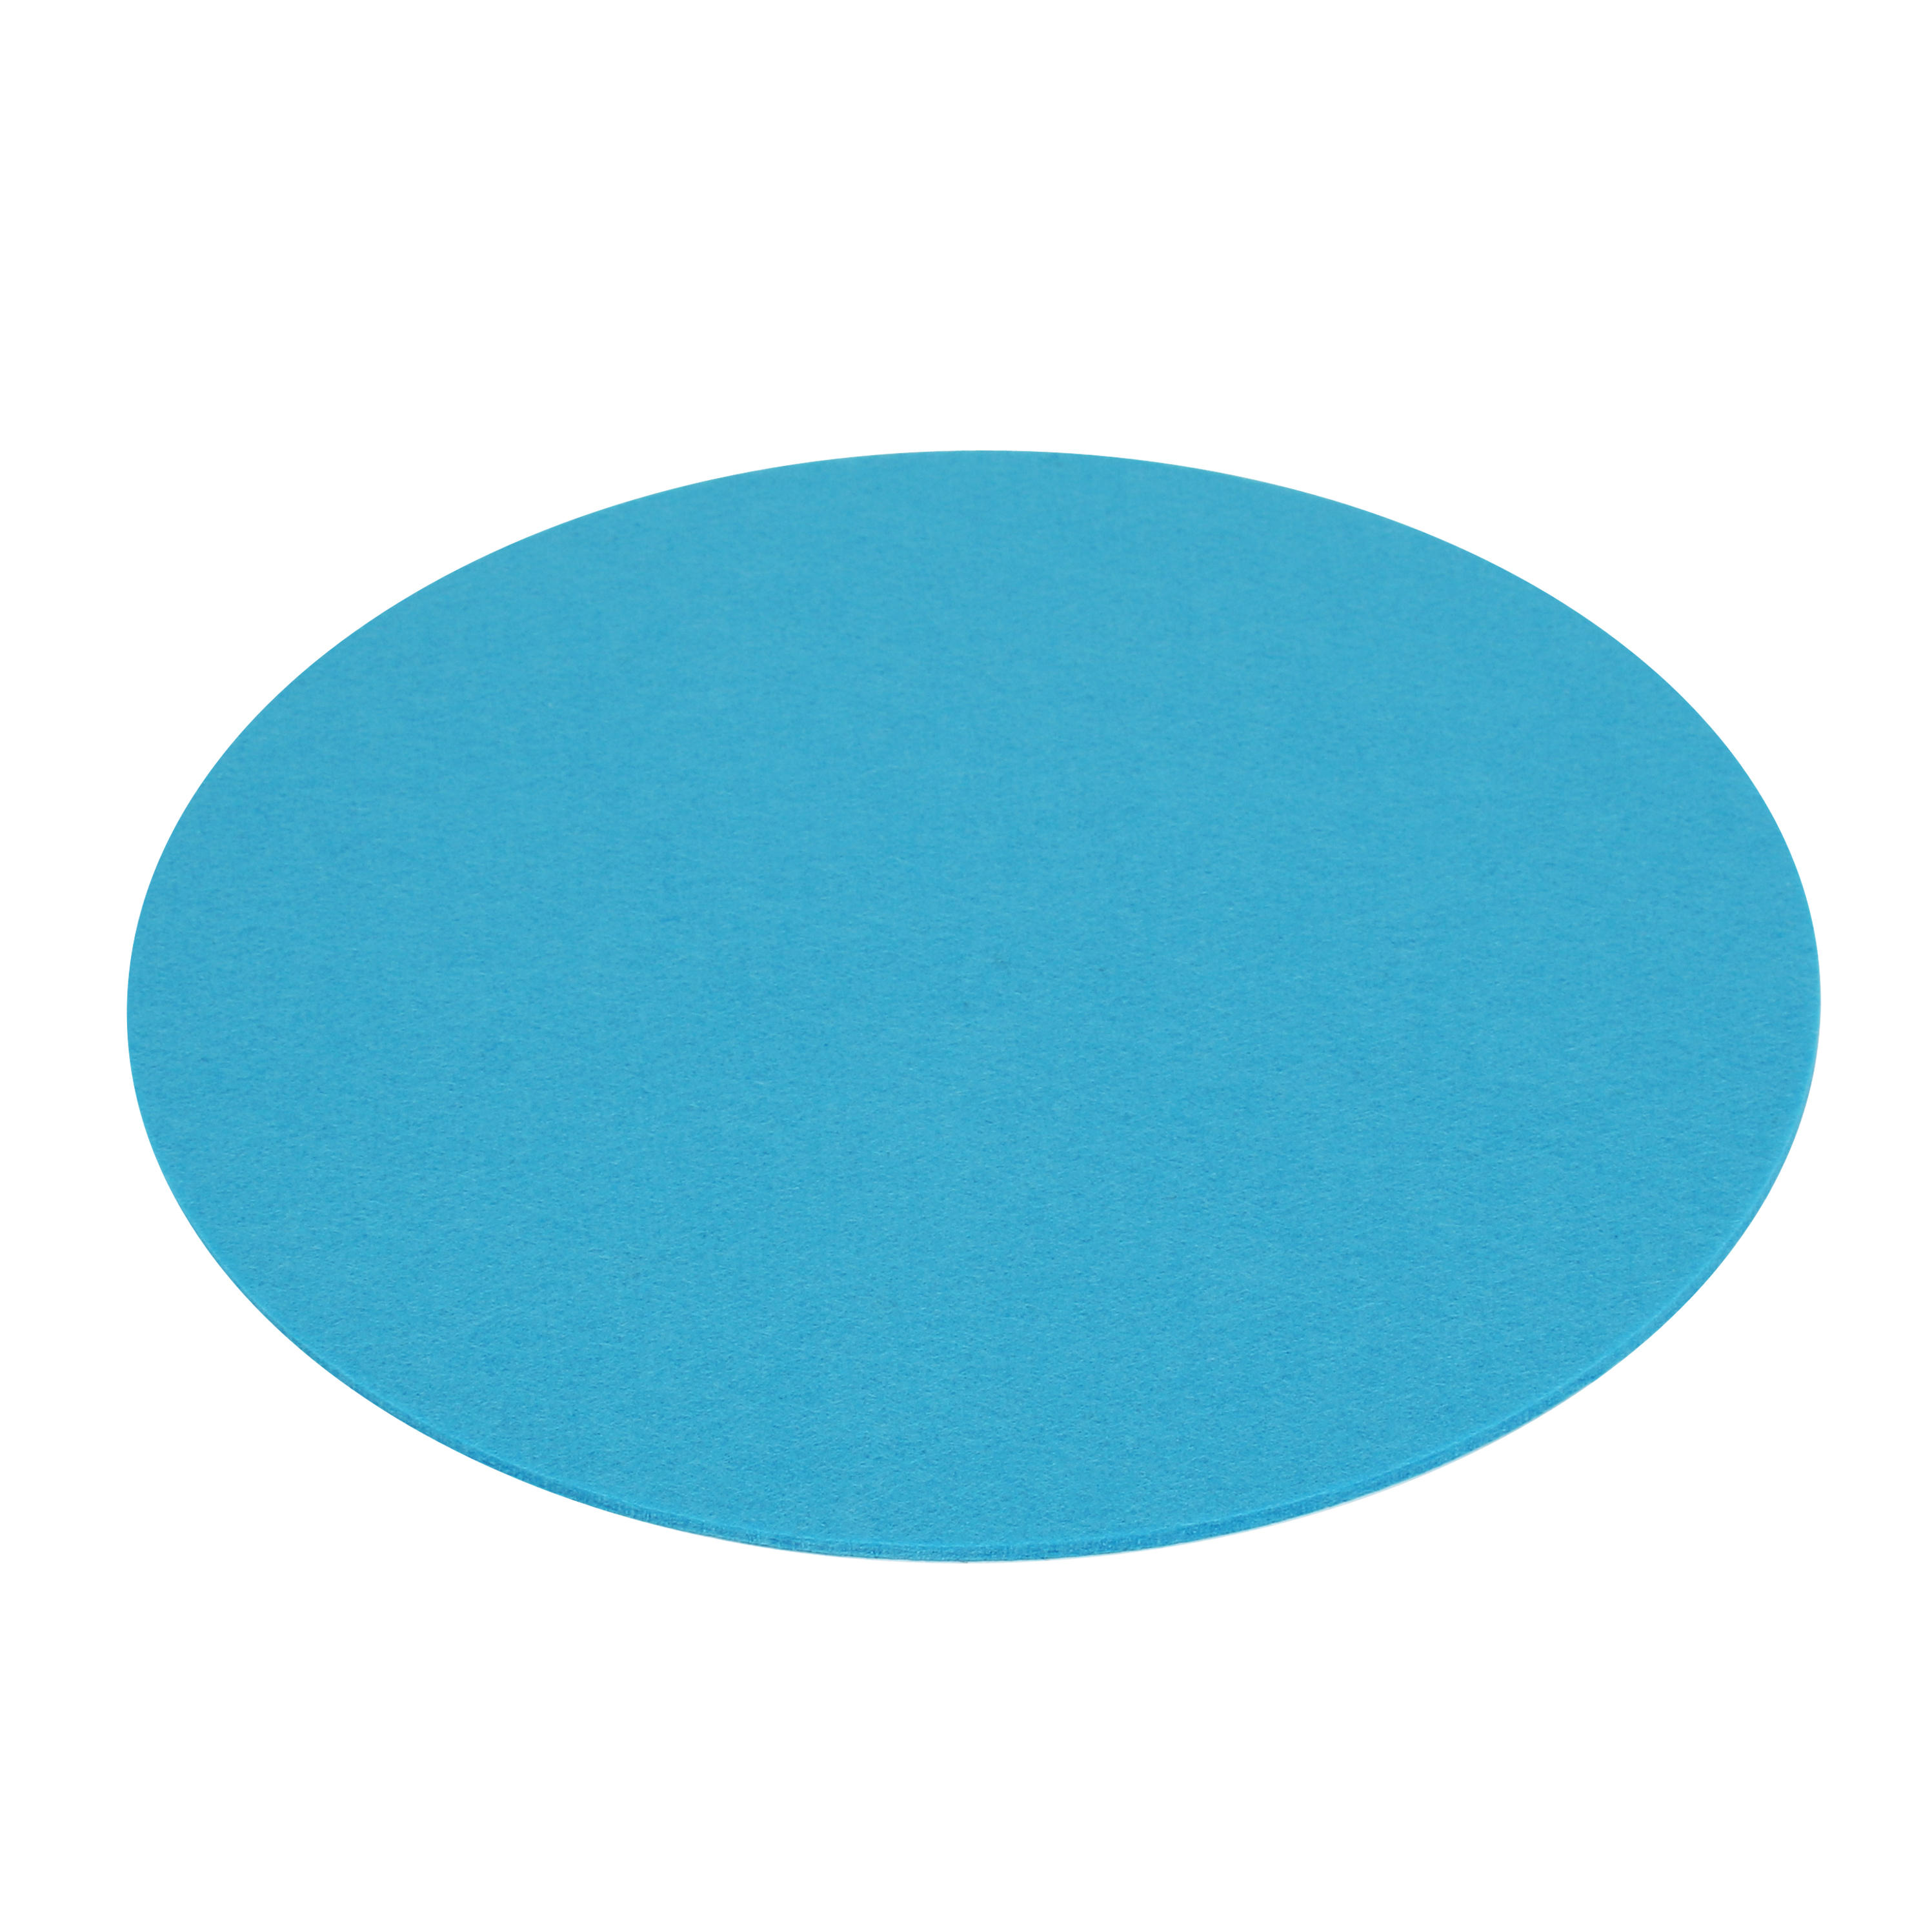 cm Filz Filzmatte FIlzauflage 33 7EVEN Auflage 4mm Einseitig Kreisförmige Blau Rund -